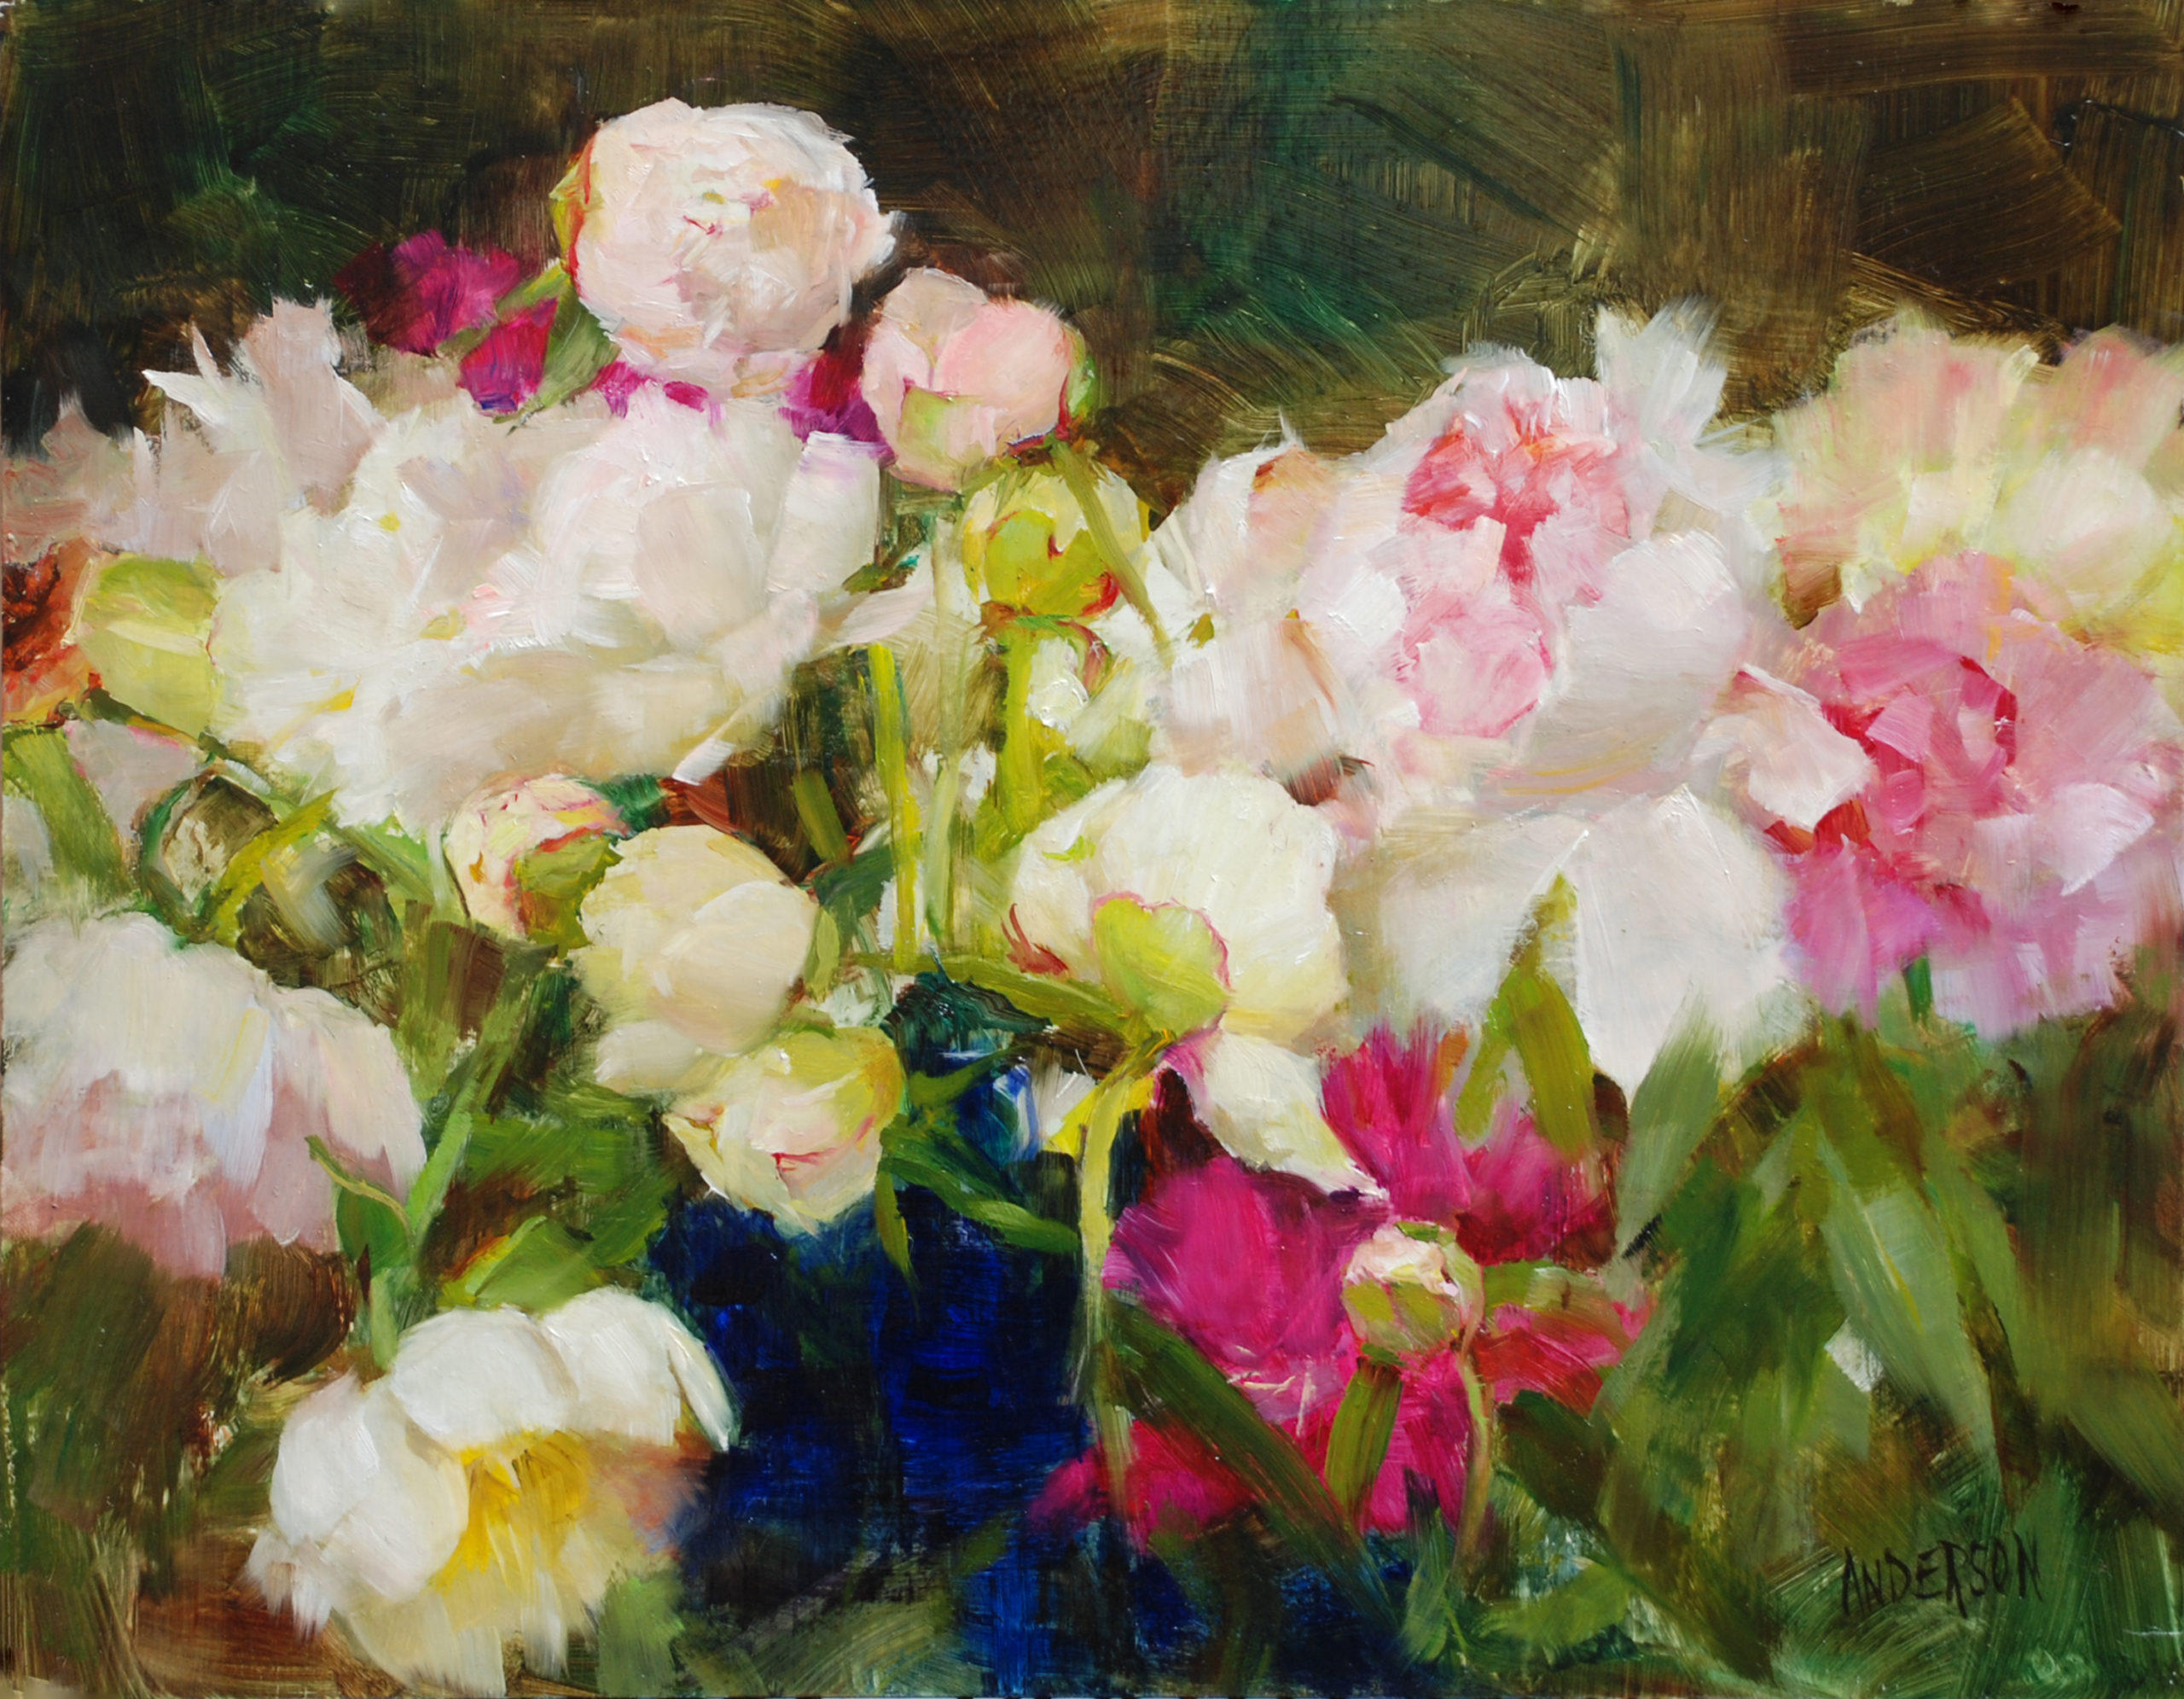 Paintings of flowers - Kathy Anderson, “Openings,” oil on board